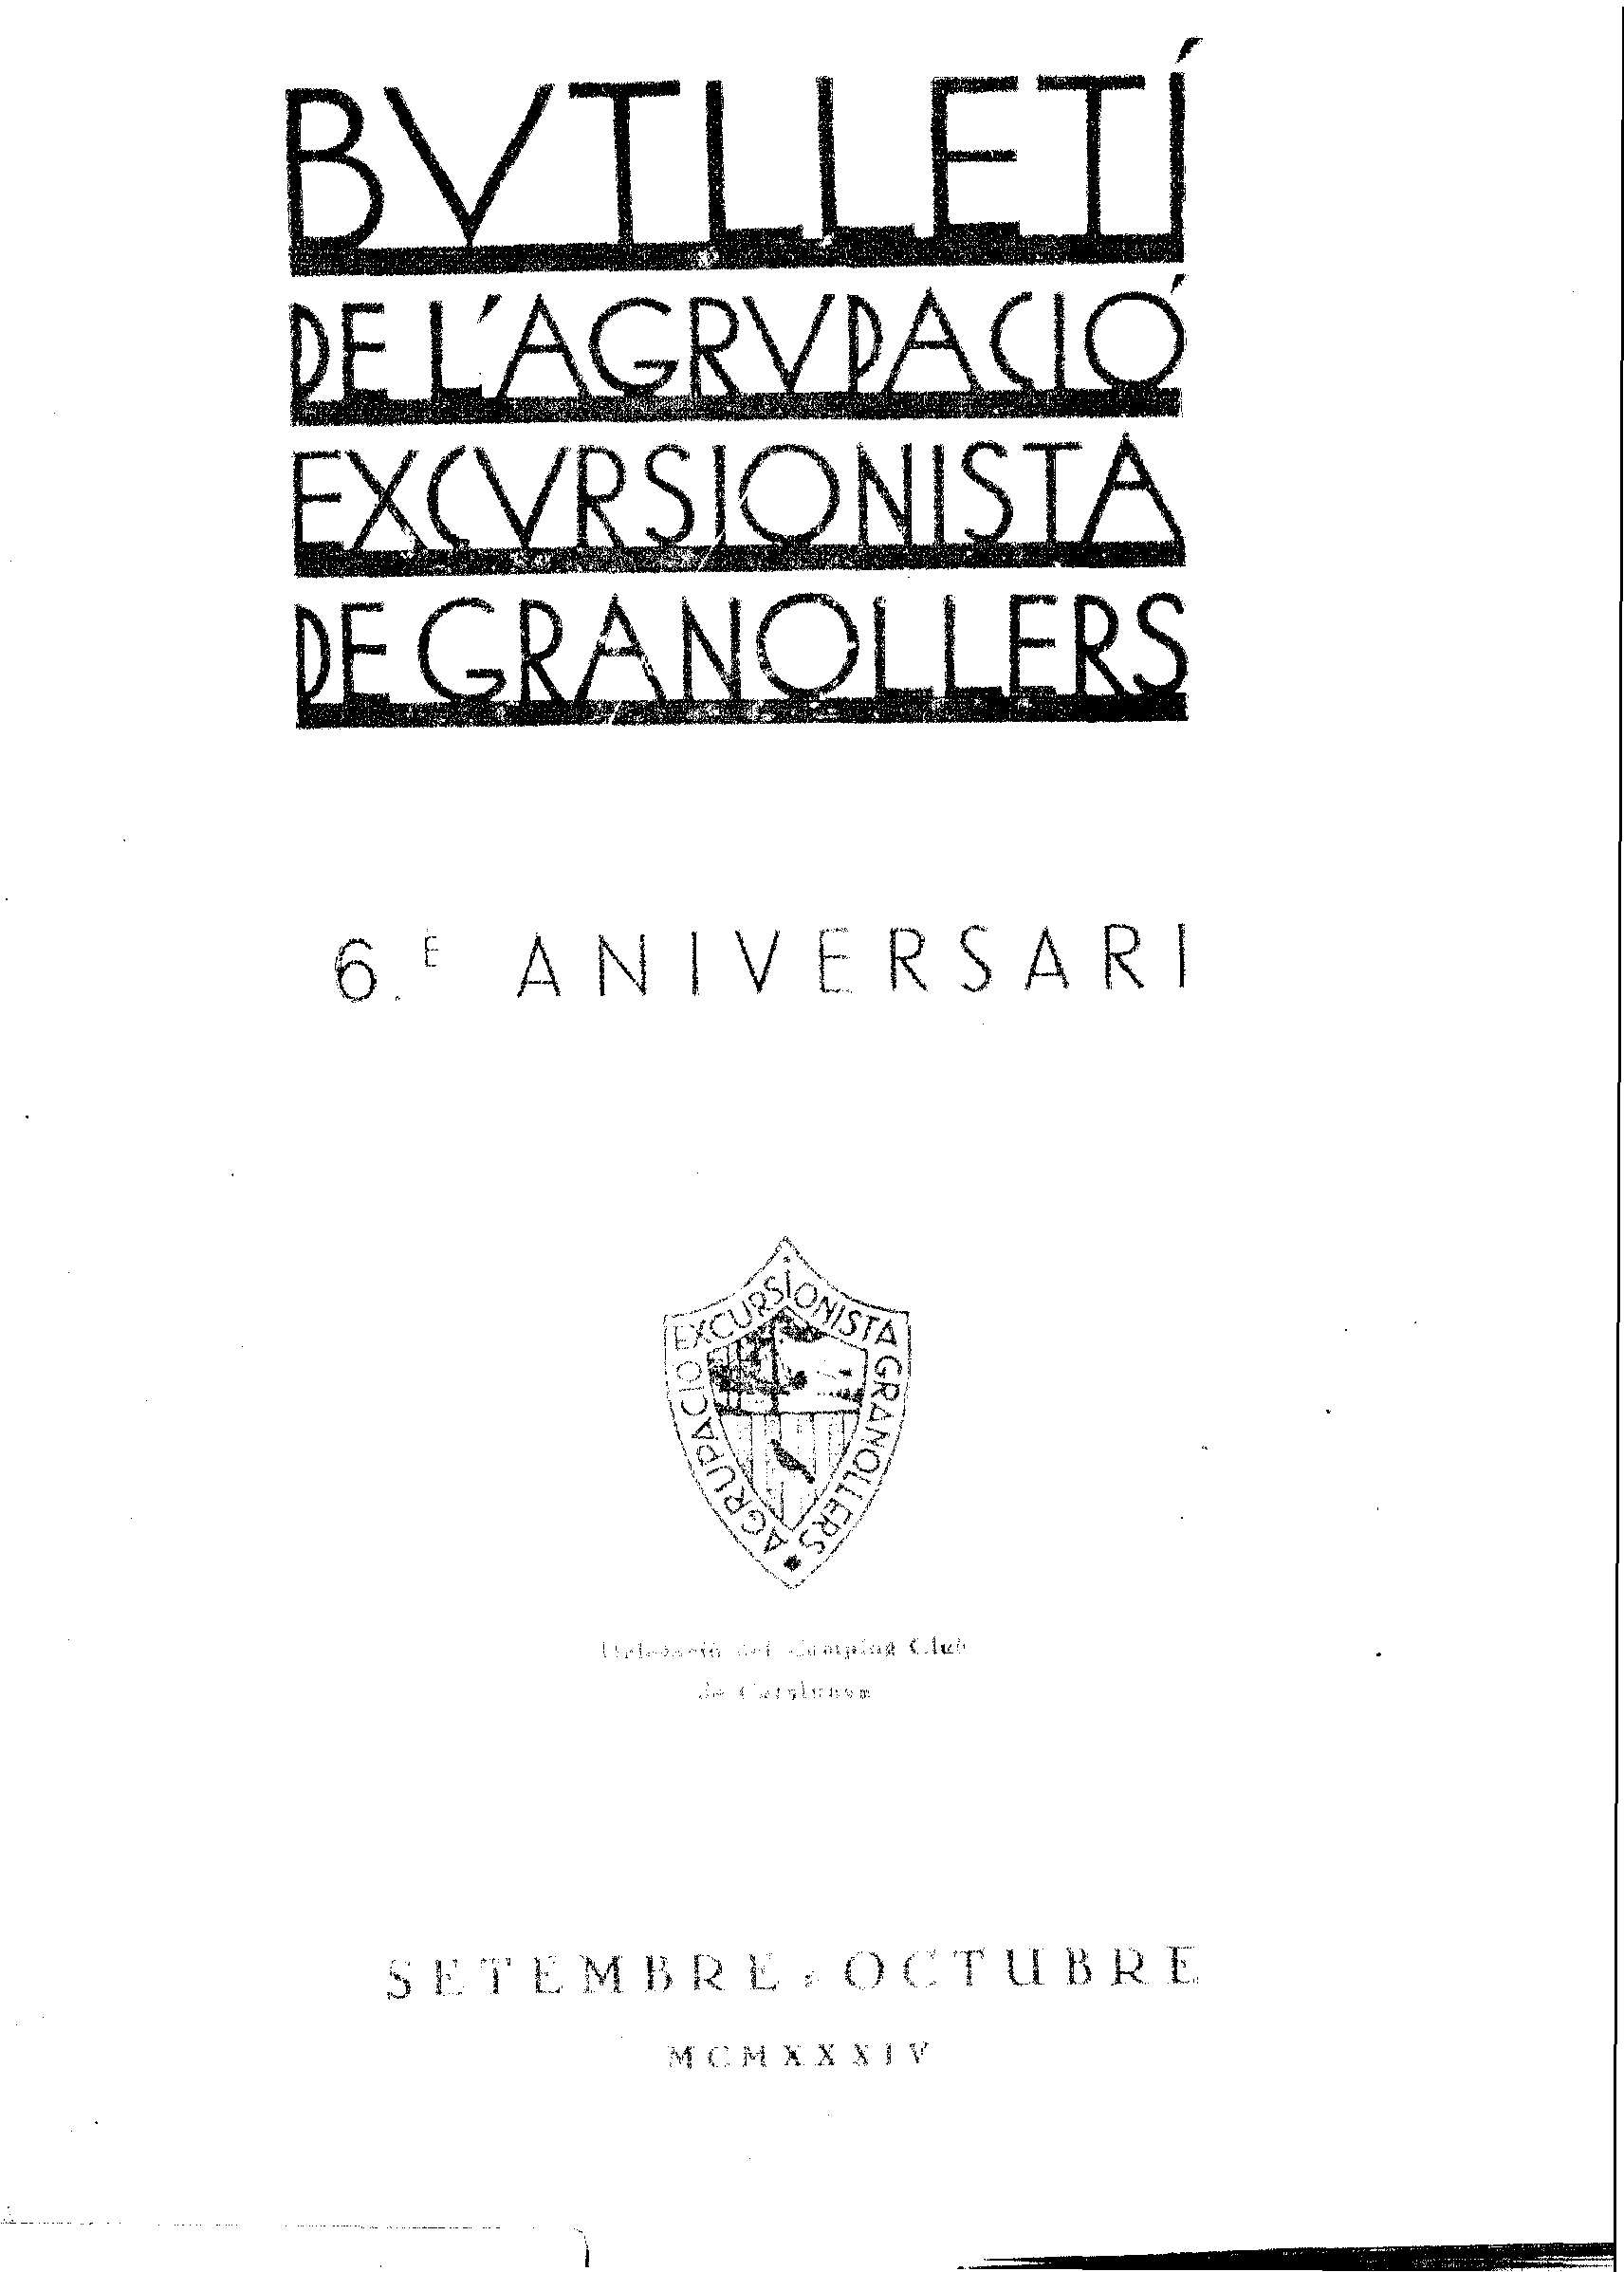 Butlletí de l'Agrupació Excursionista de Granollers, 1/9/1934 [Exemplar]